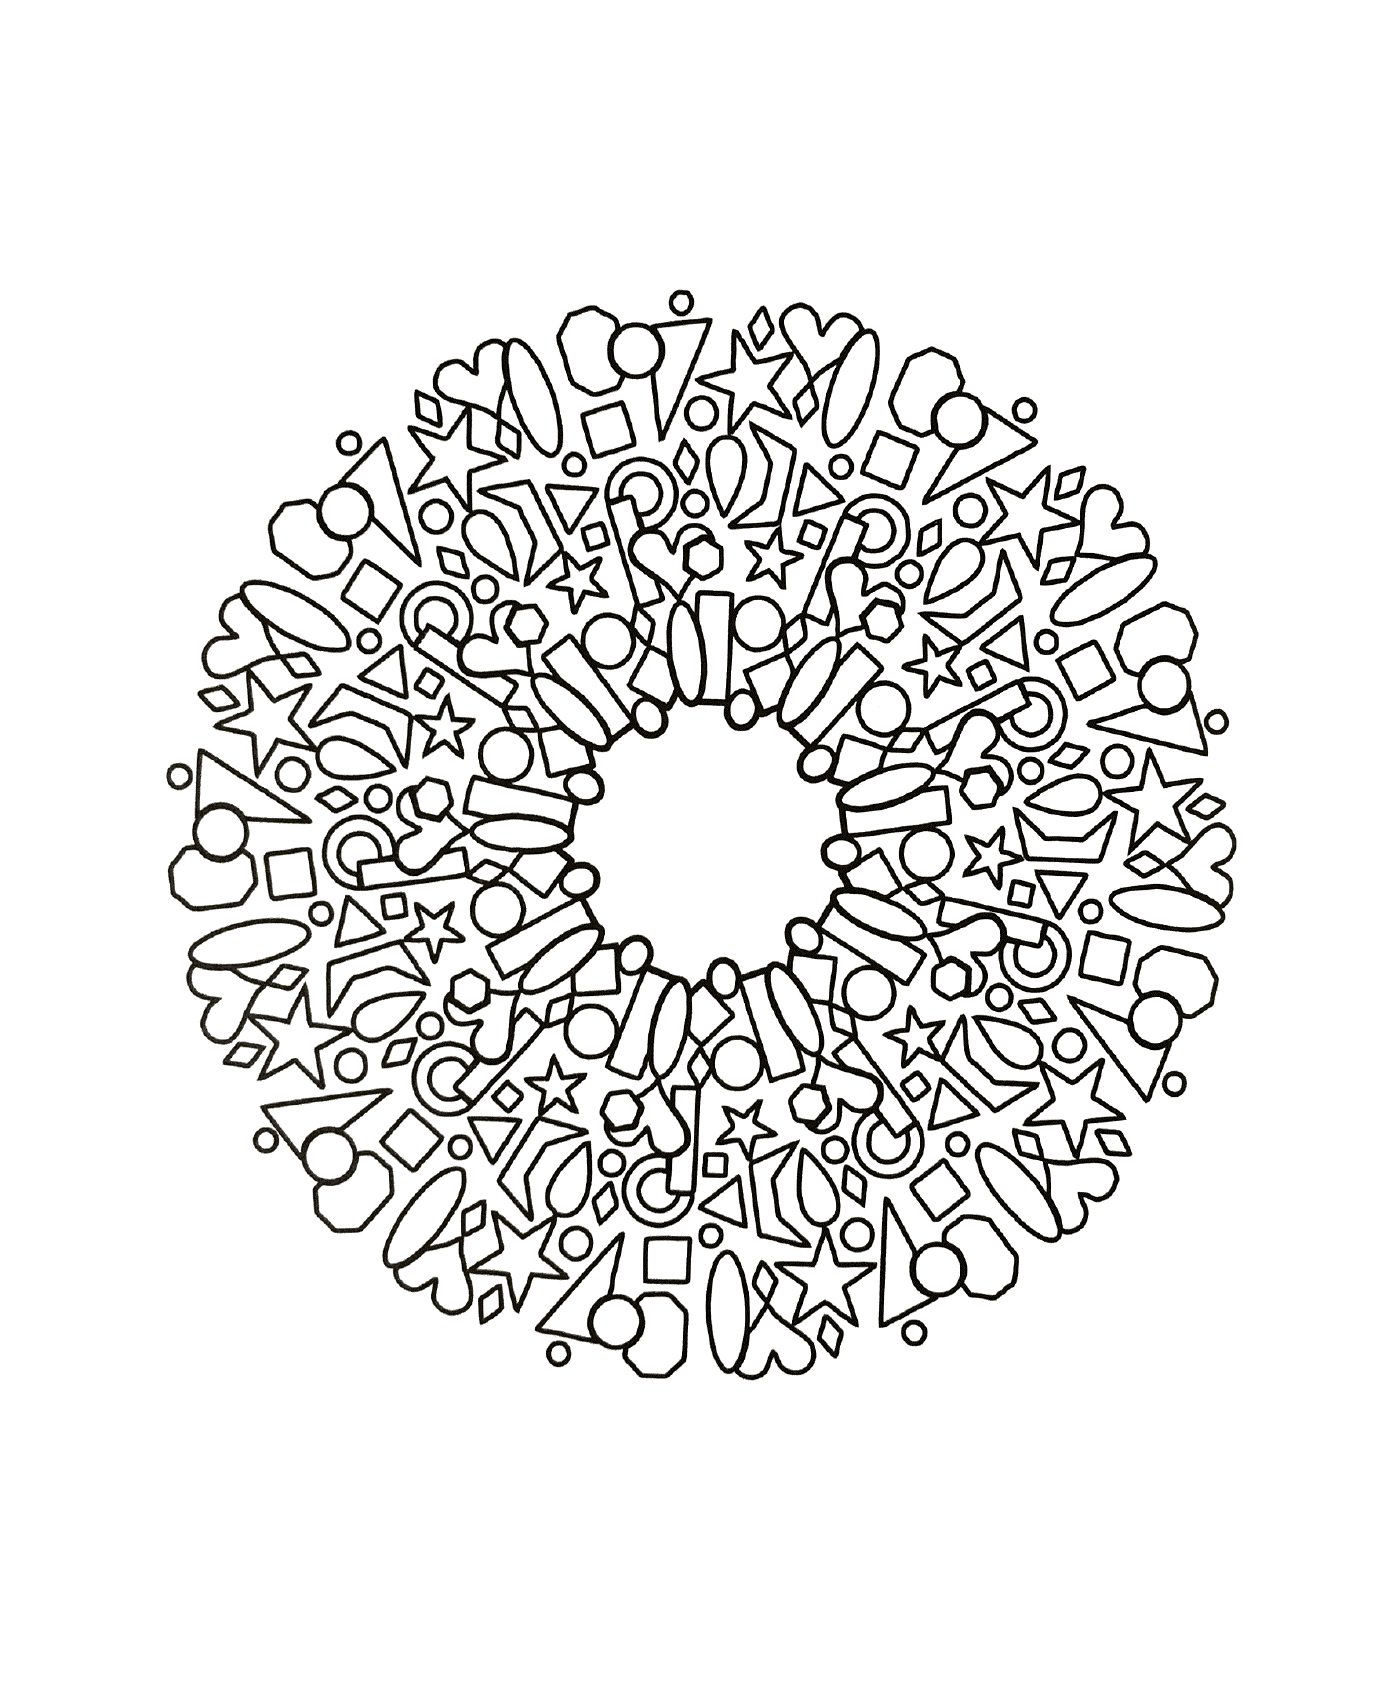  Kreisförmiges Modell verschiedener Formen 